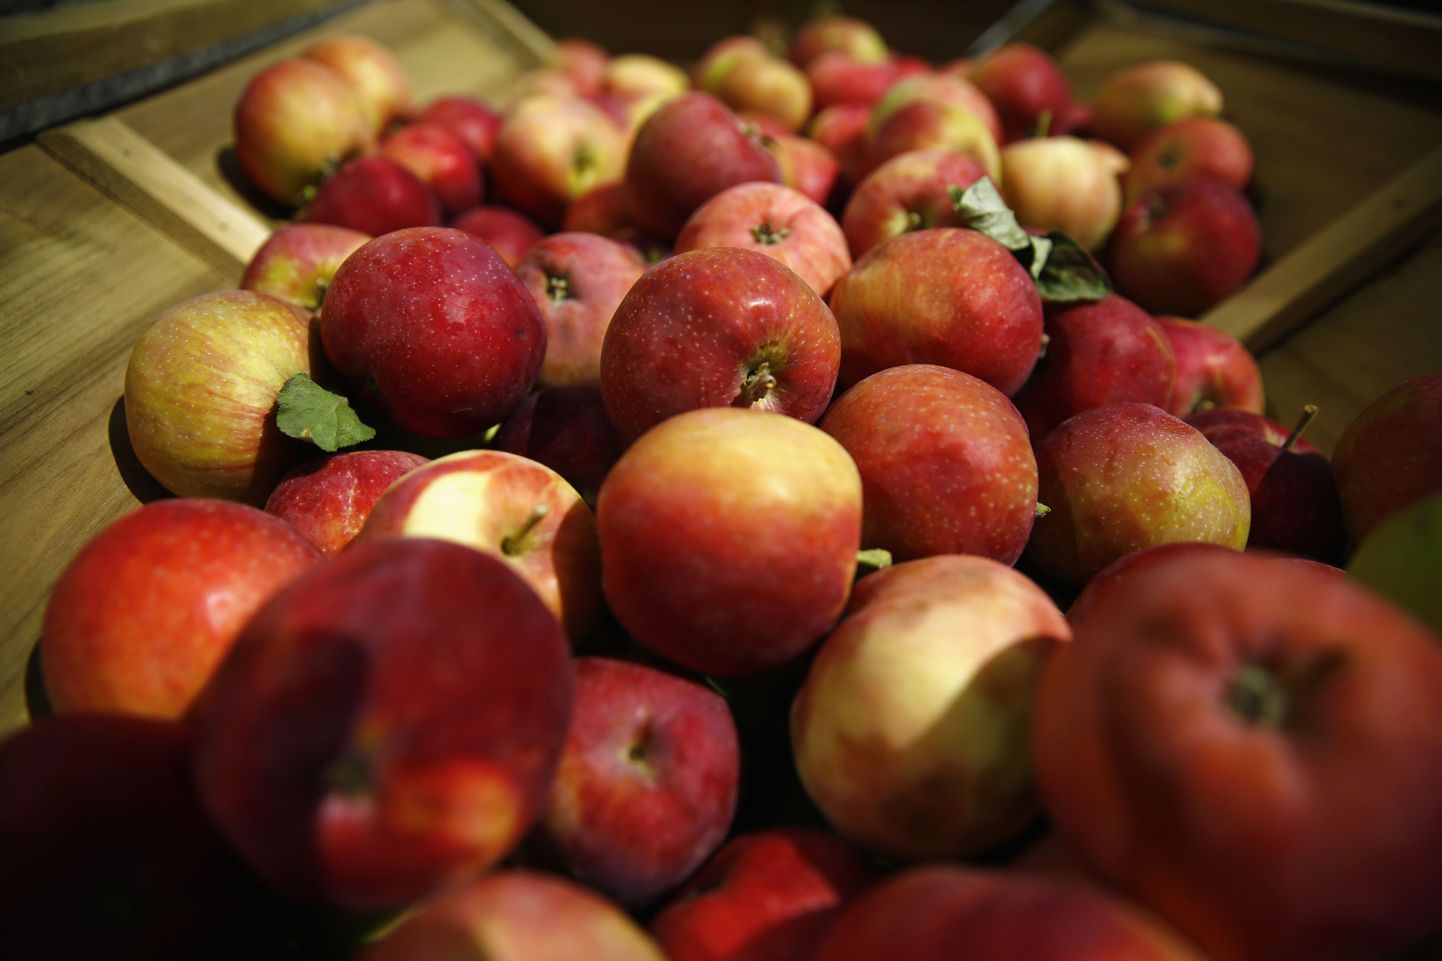 Poola on hädas õuntega, mida pole kellelegi müüa. Üks Warssawi restoran jagab näiteks õunu tasuta, soovitades linnaelanikel neid süüa, et toetada Poola talunikke.